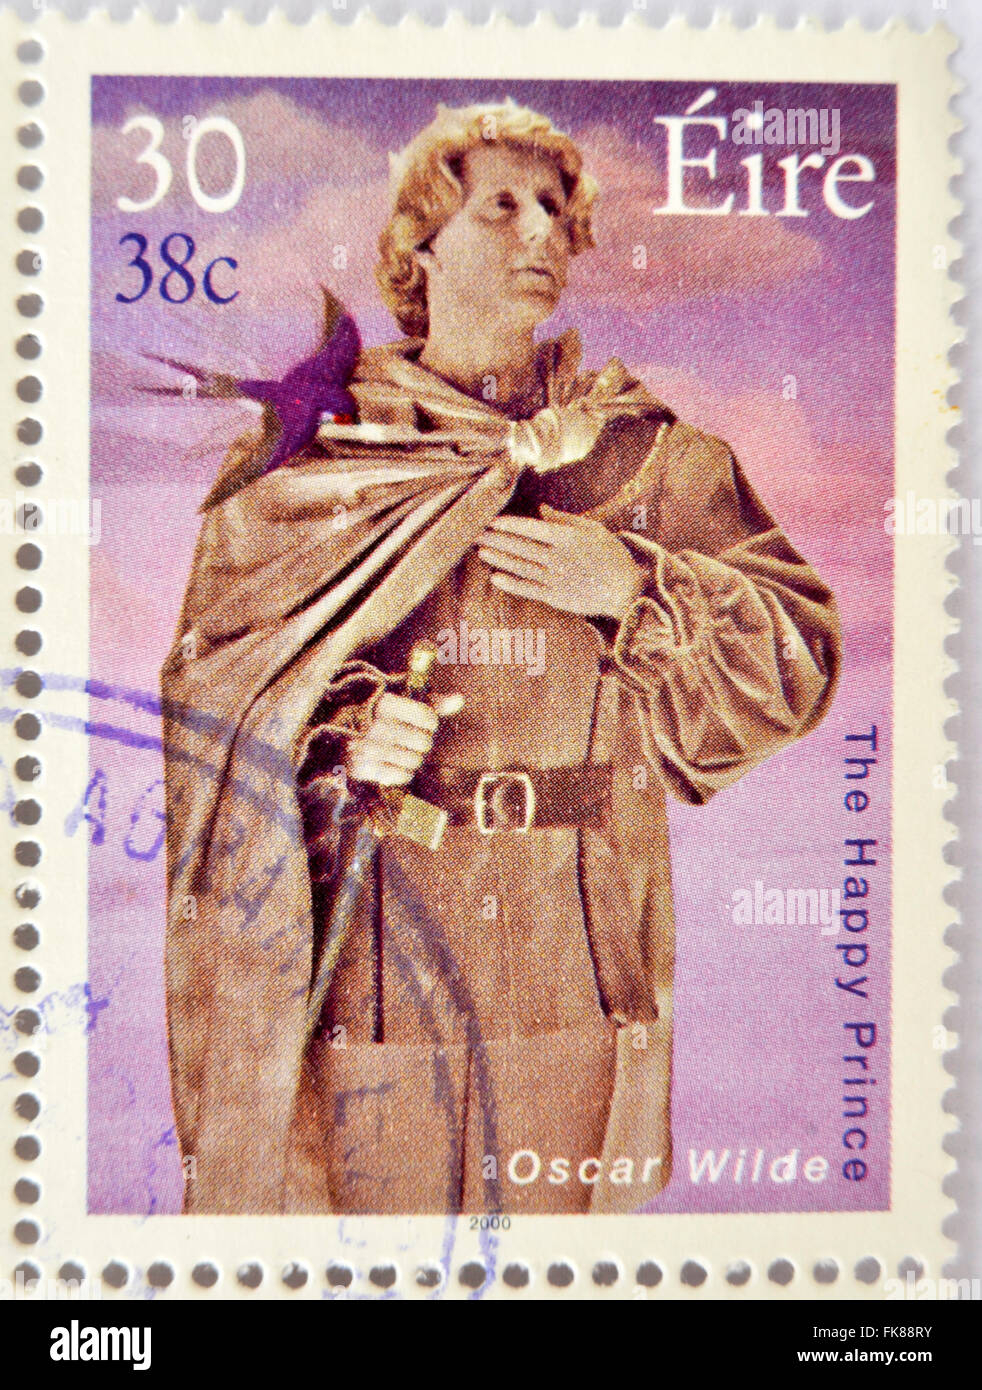 Irlanda - circa 2000: un sello impreso en Irlanda muestra una imagen conmemorativo del príncipe feliz de Oscar Wilde un libro Foto de stock